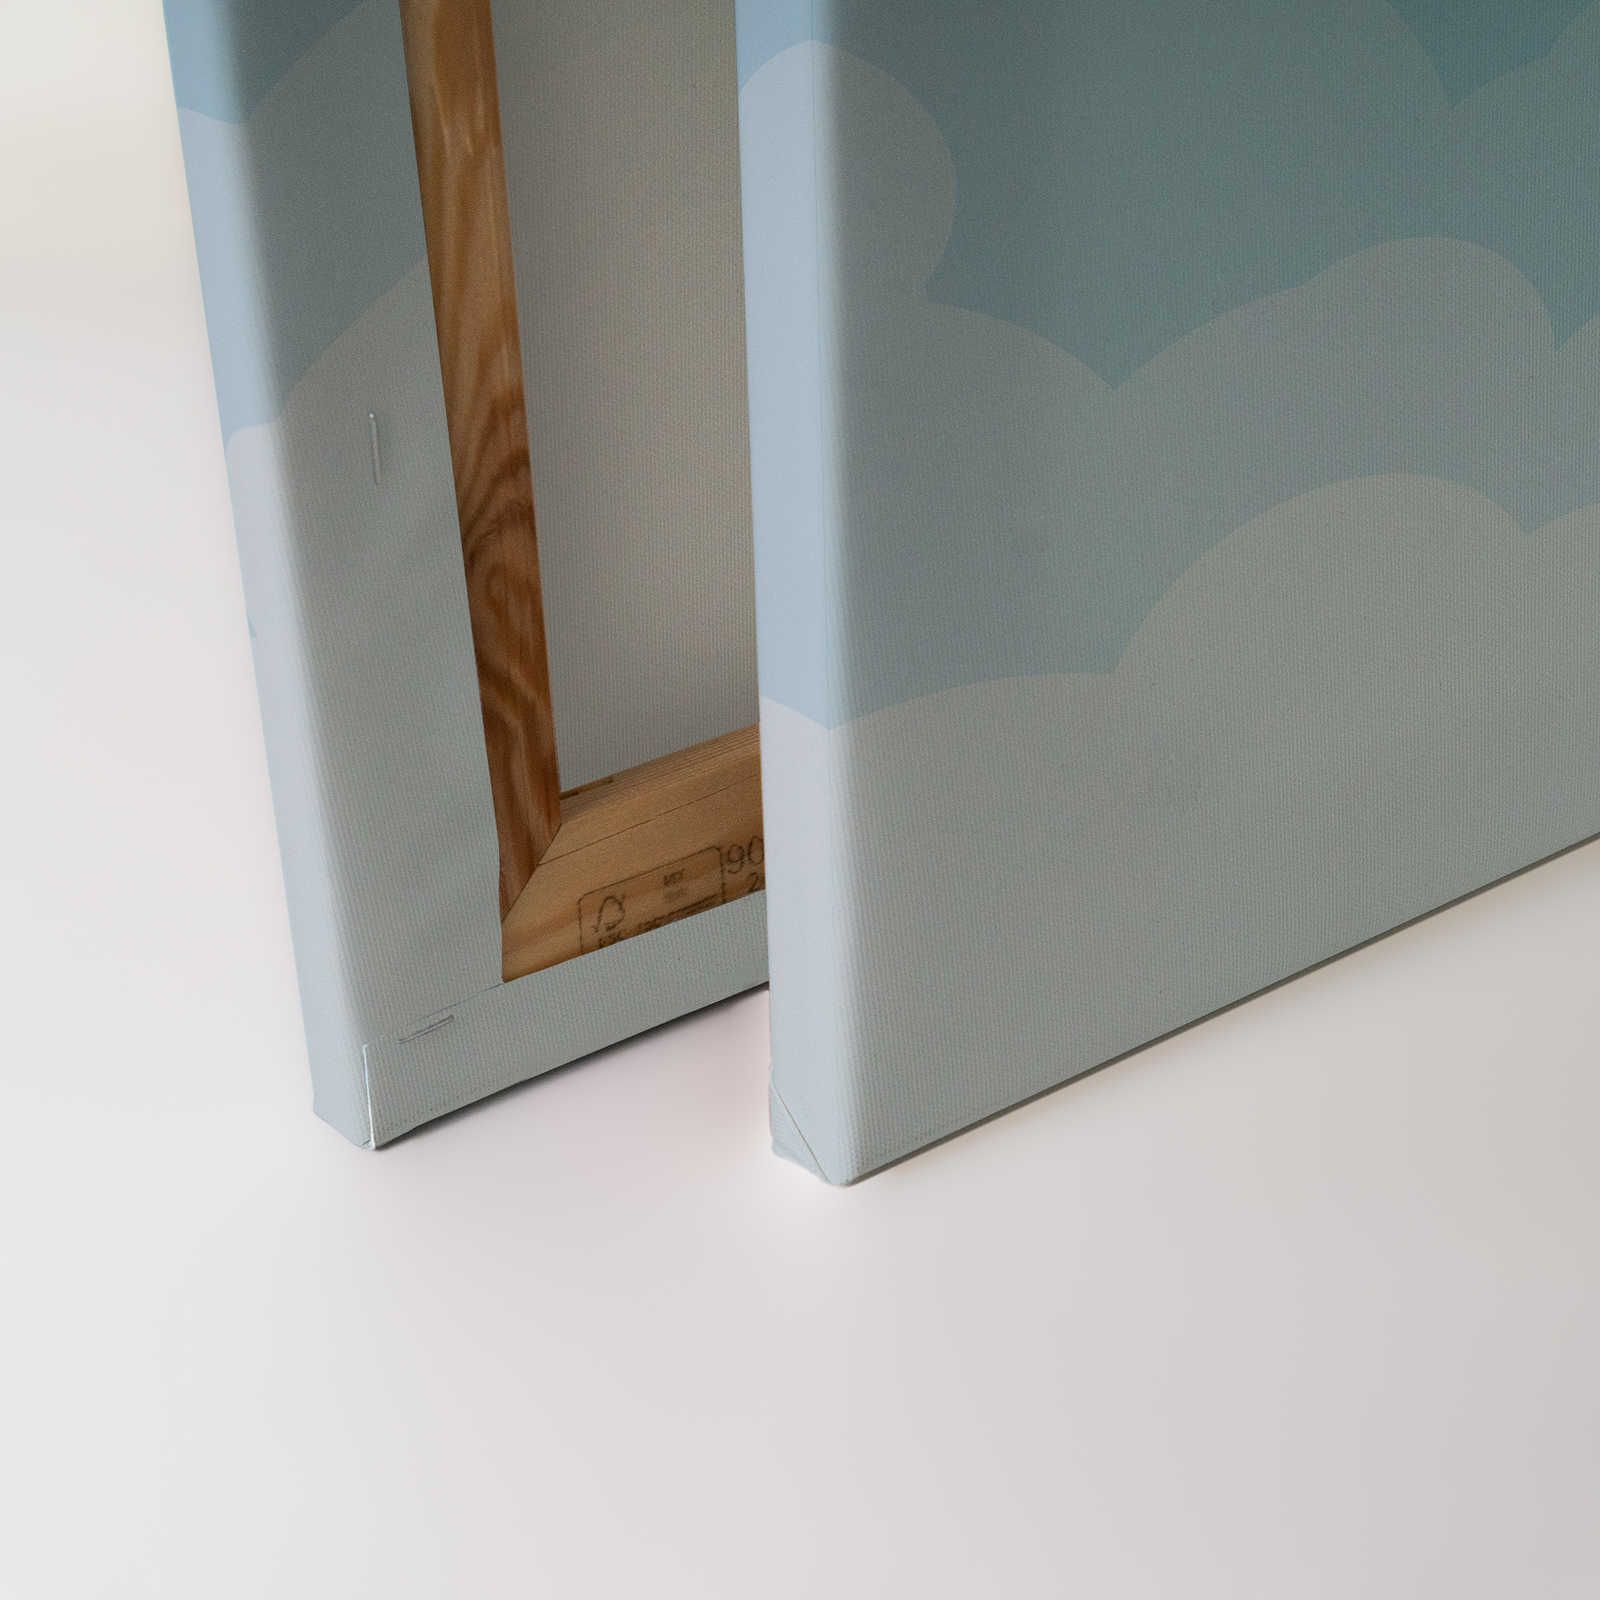             Toile Ciel avec nuages style bande dessinée - 90 cm x 60 cm
        